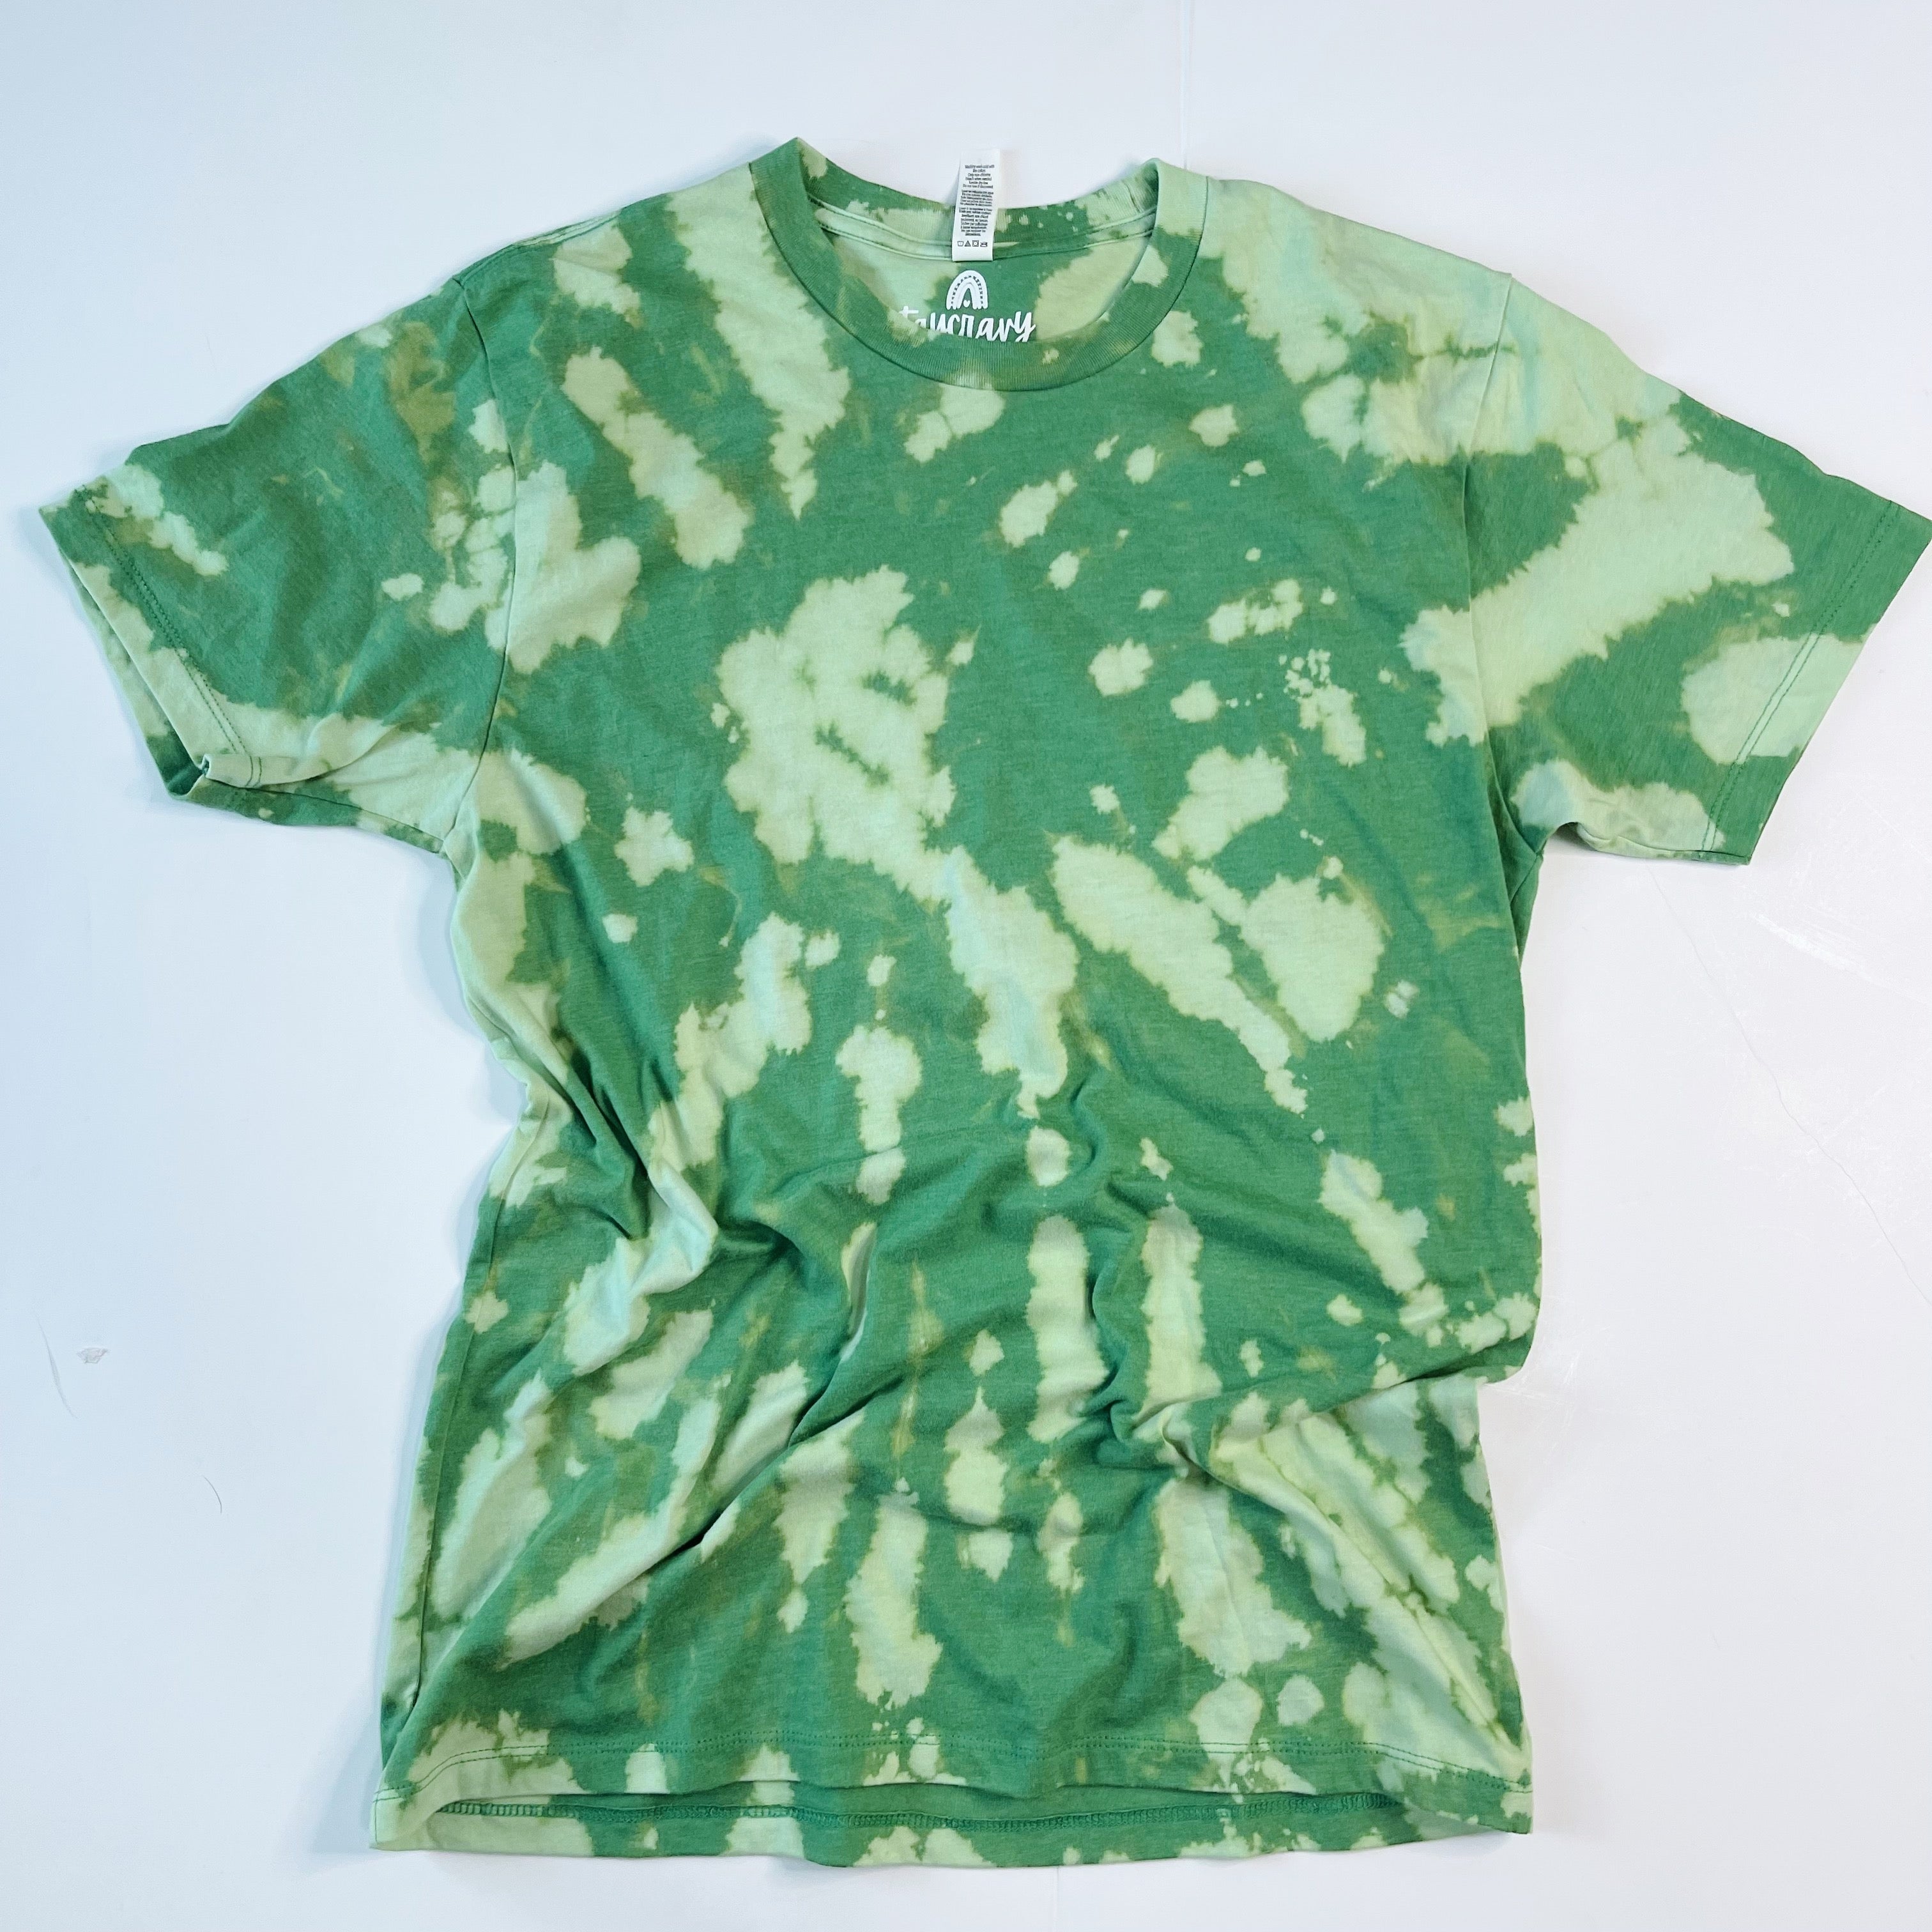 Kids Tie Dye T-shirt - Kelly Green, Small 